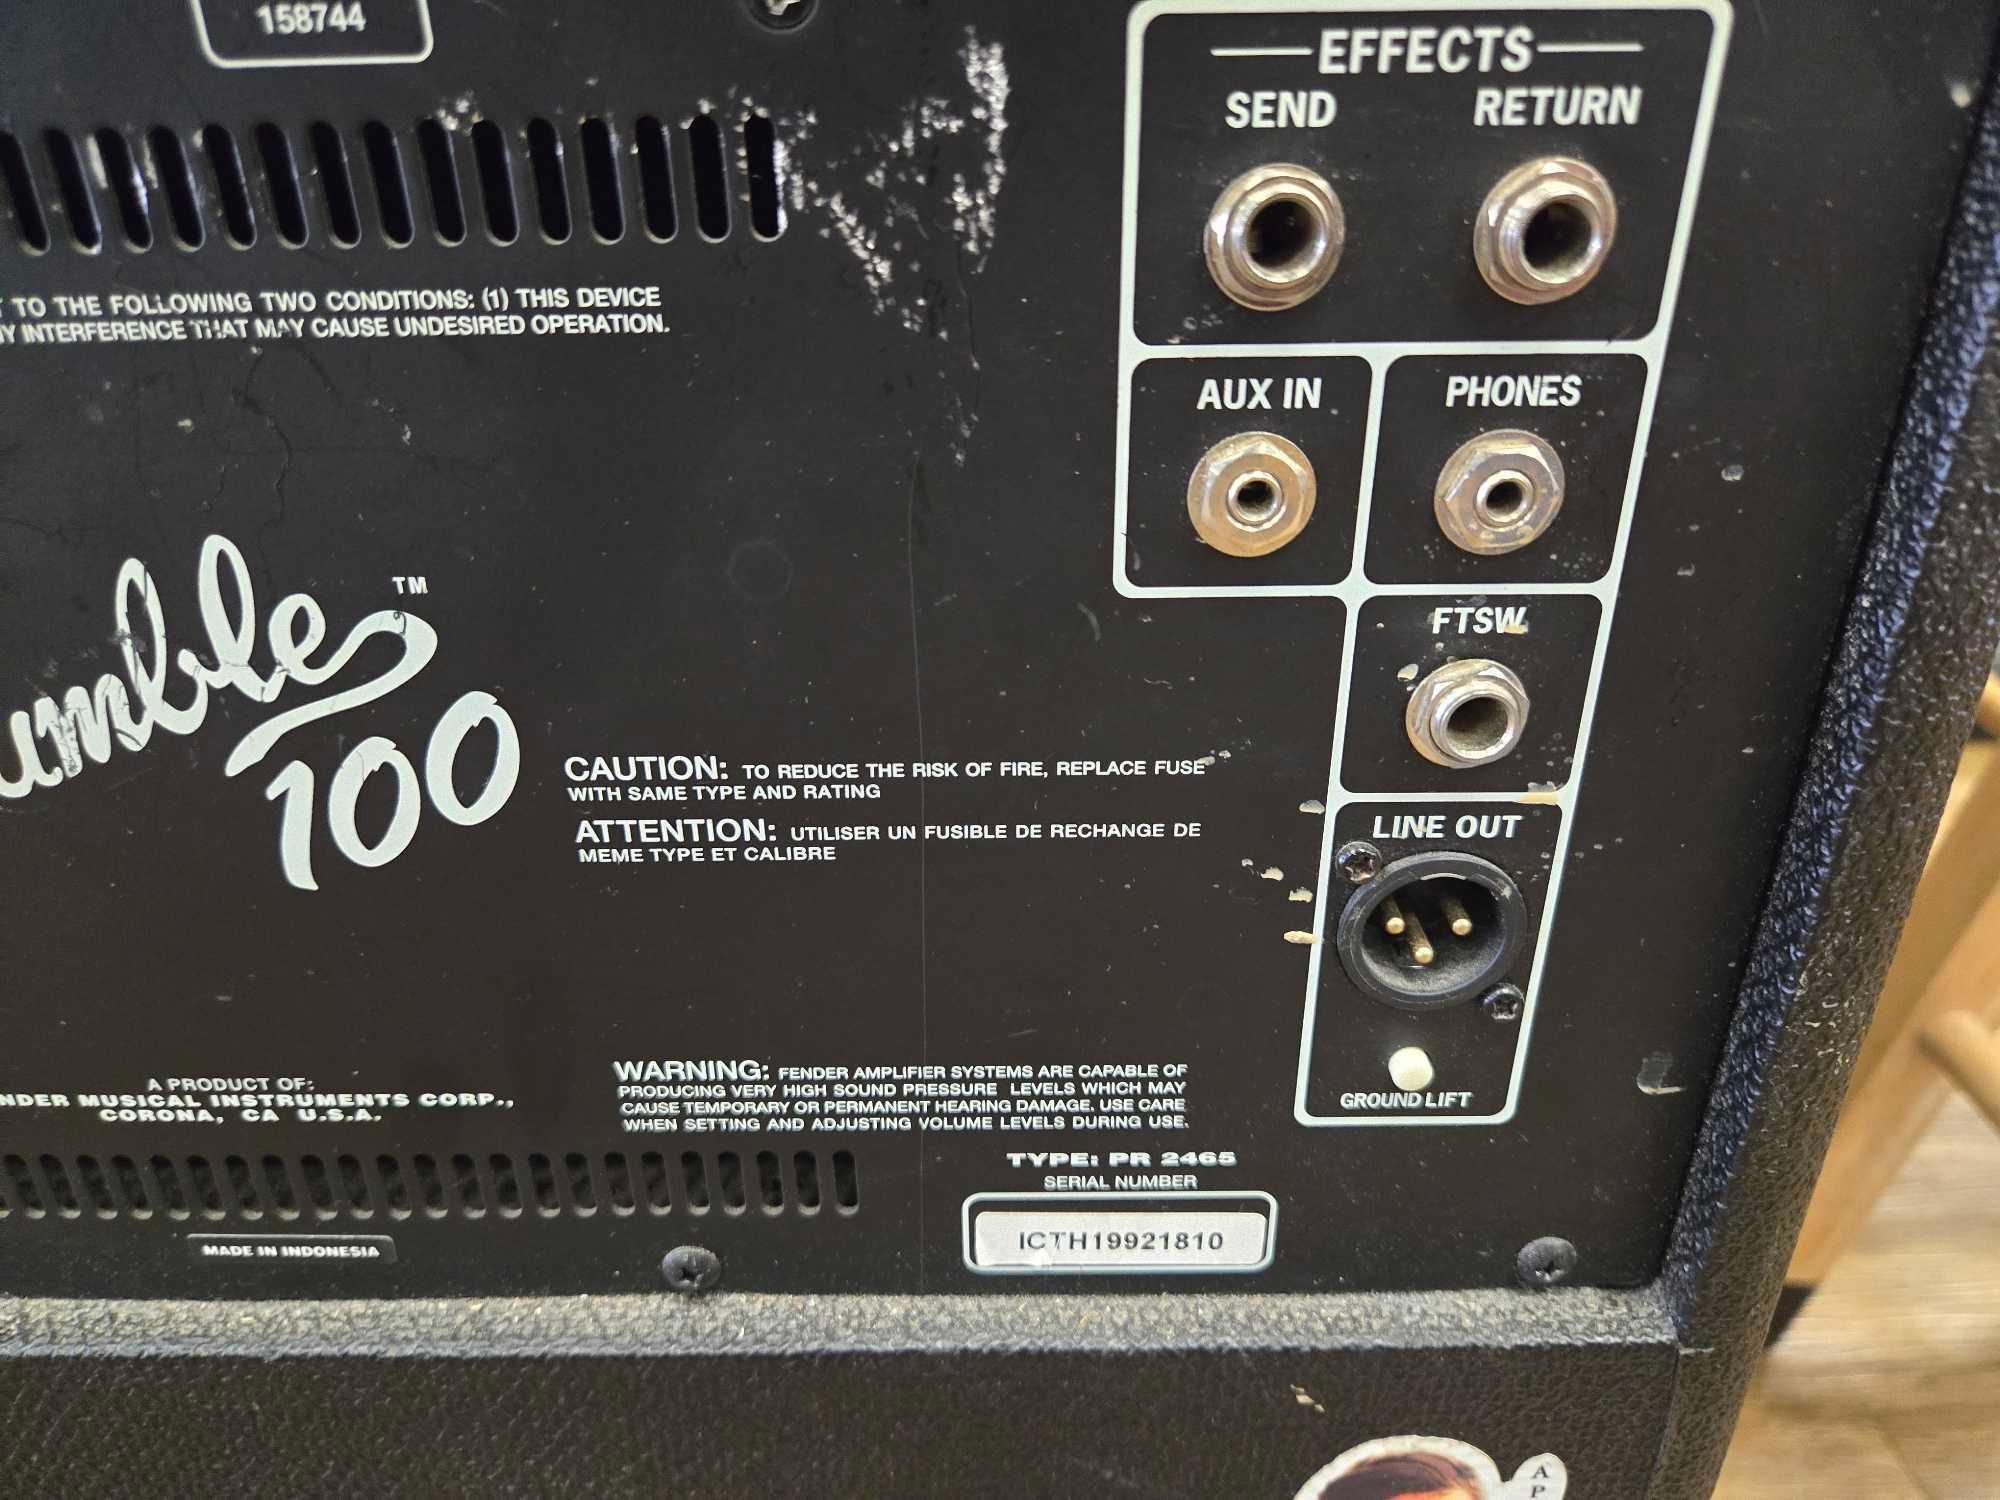 Fender Rumble 100 Bass Amplifier